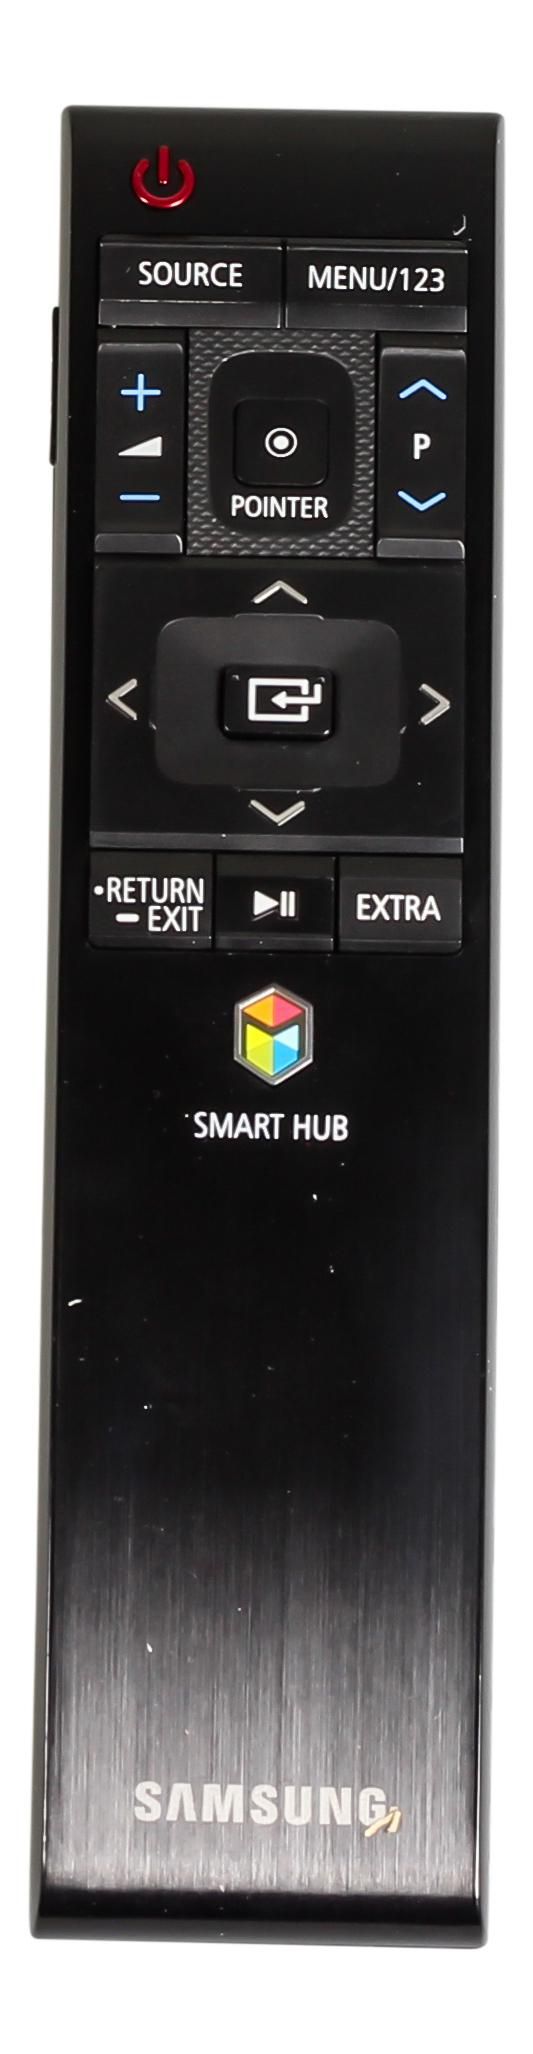 Samsung Remote Control TM1560 - W125245617